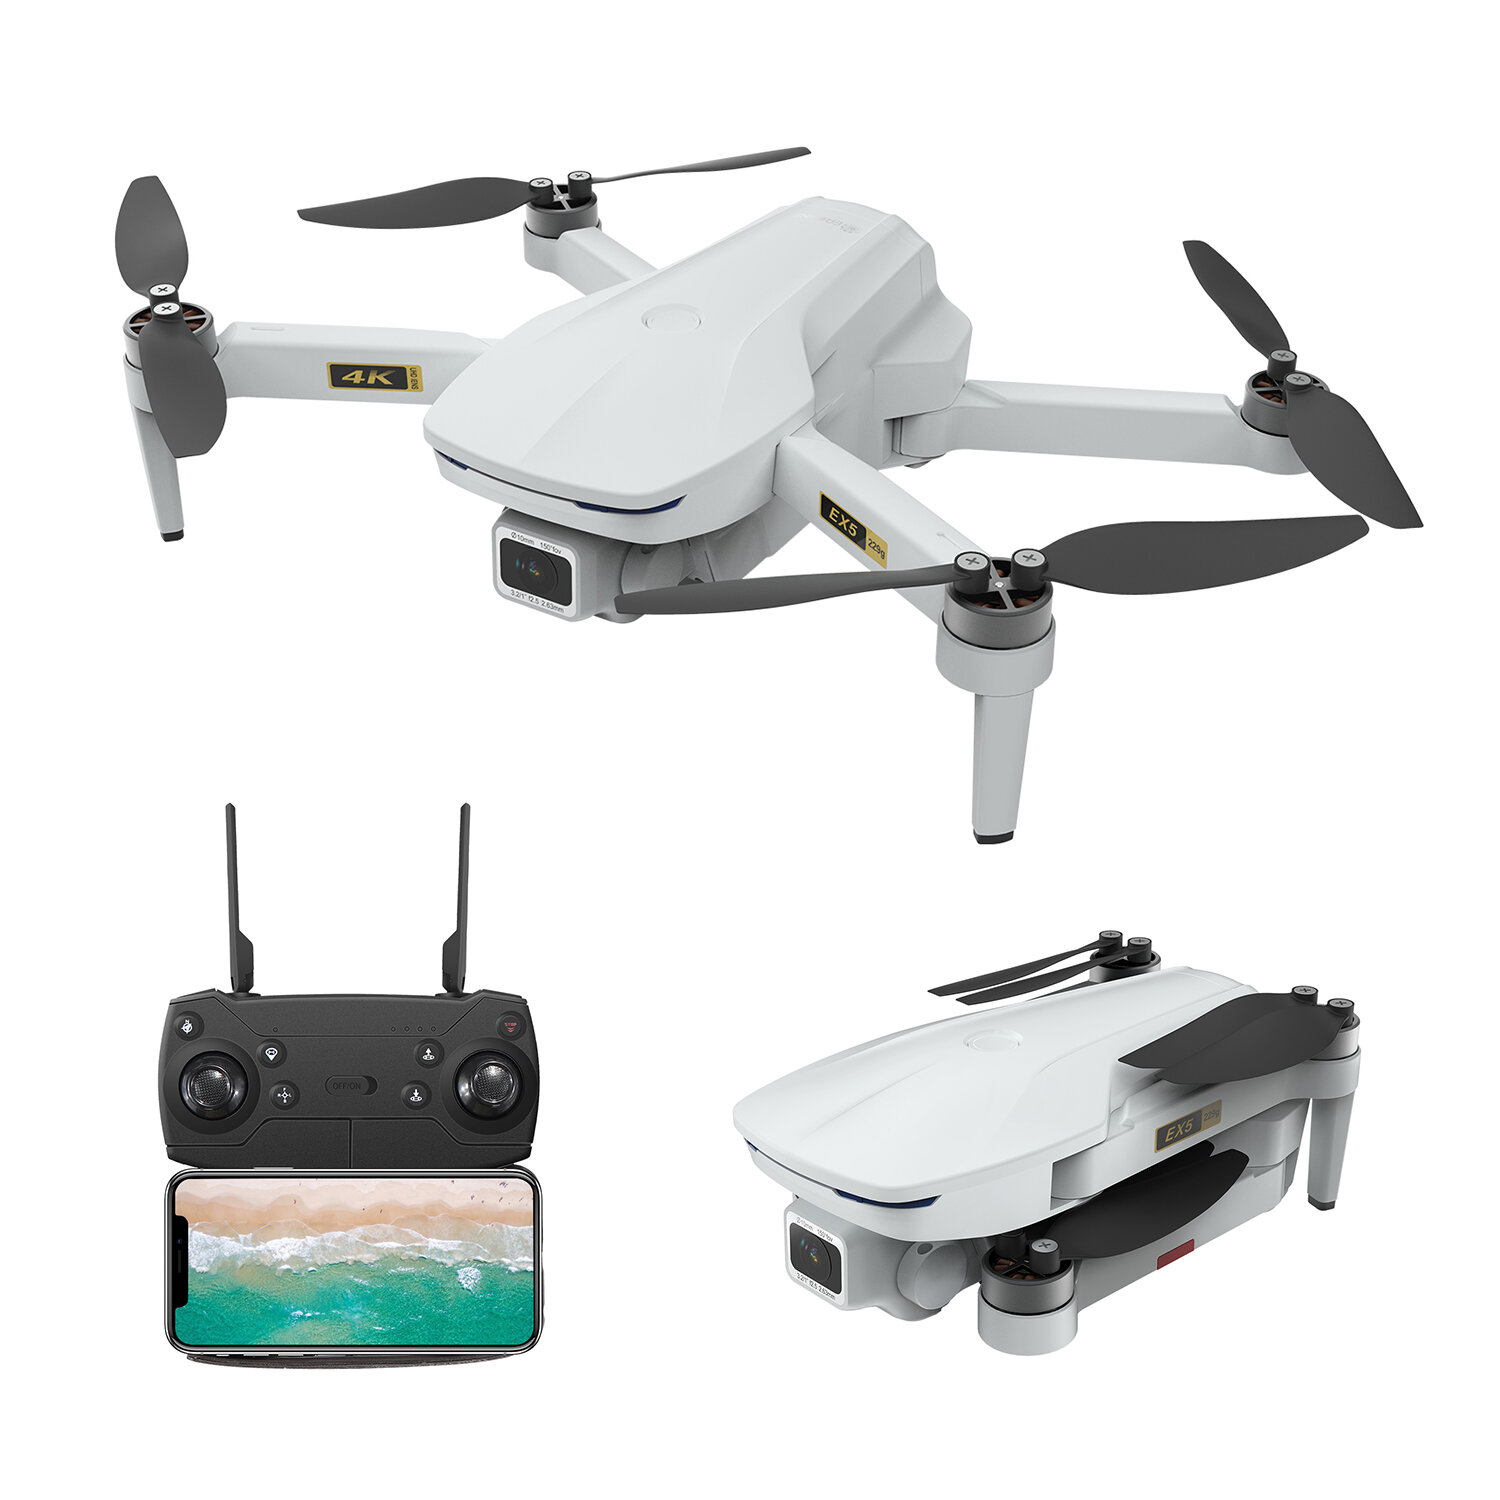 Στα 91.61€ από αποθήκη Τσεχίας | Eachine EX5 5G WIFI 1KM FPV GPS With 4K HD Camera Servo Gimbal 30mins Flight Time 229g Foldable RC Drone Quadcopter RTF